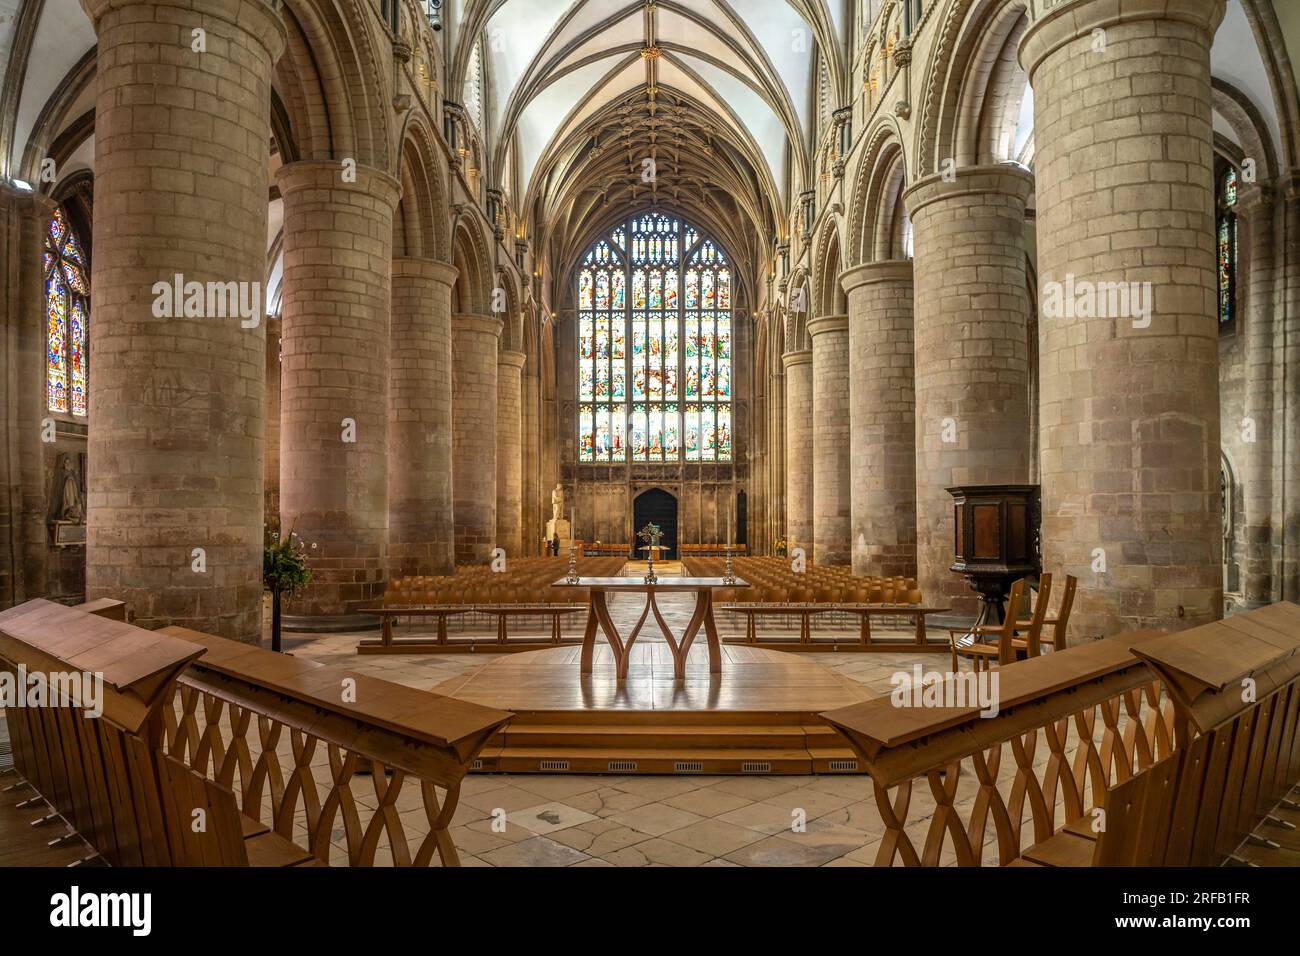 Innenraum der Kathedrale von Gloucester, England, Großbritannien, Europa | Gloucester Cathedral Interior, Gloucester, England, Vereinigtes Königreich der Gr Stockfoto